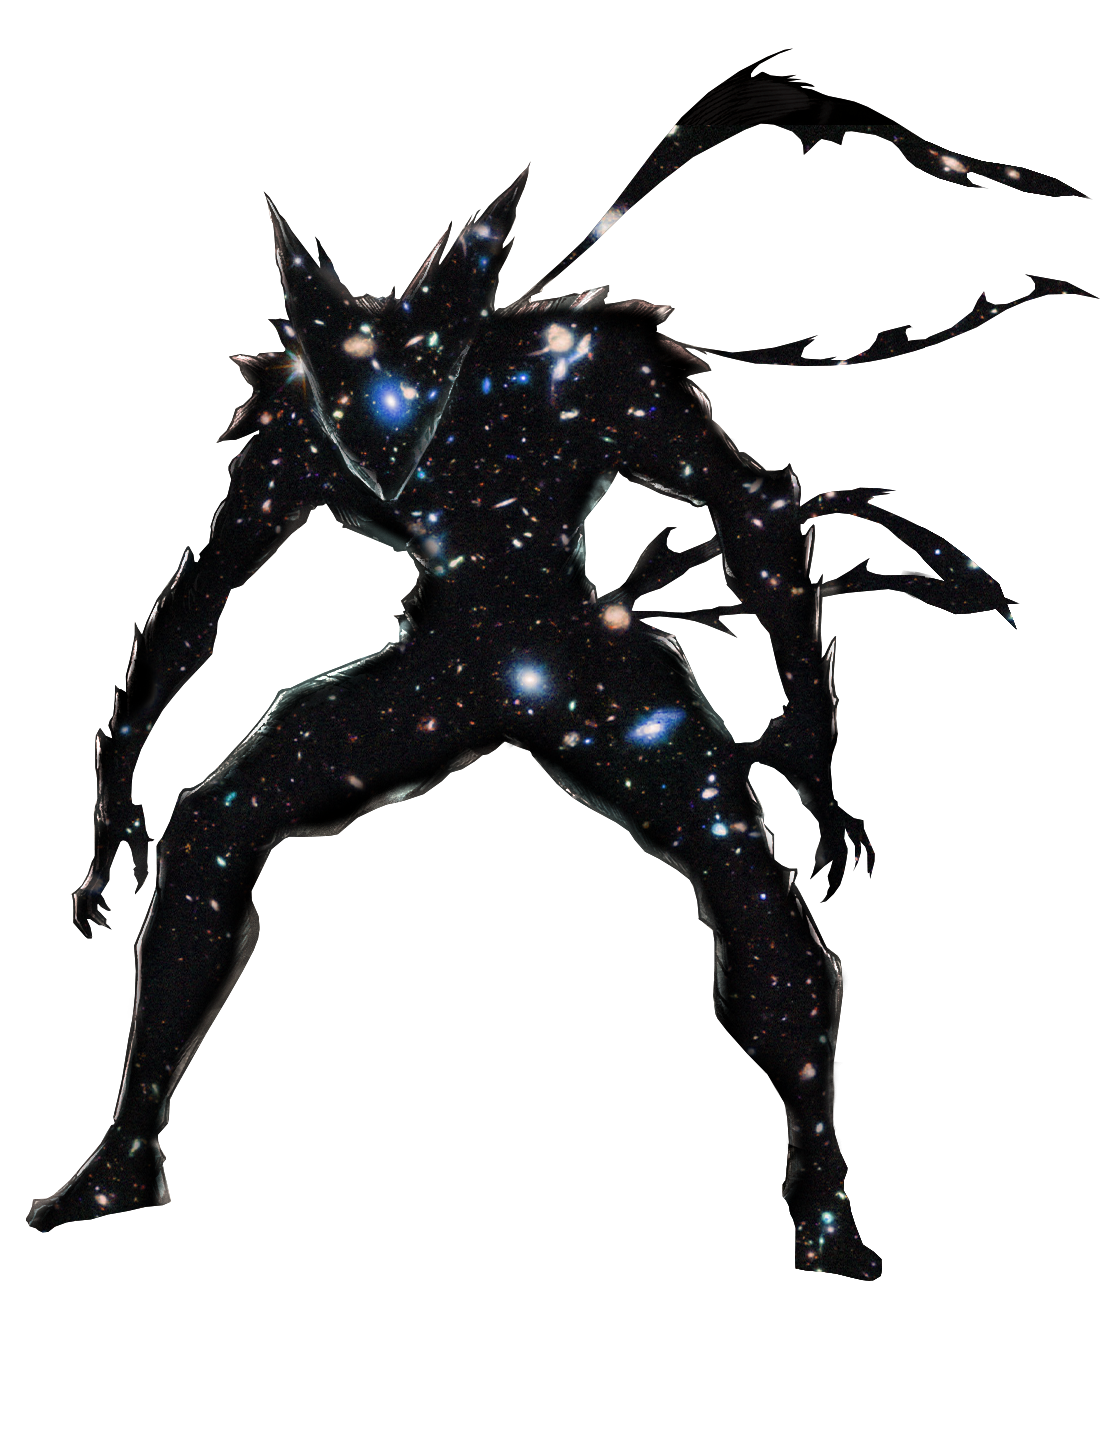 Garou Cósmico (One Punch Man) - Cosmic